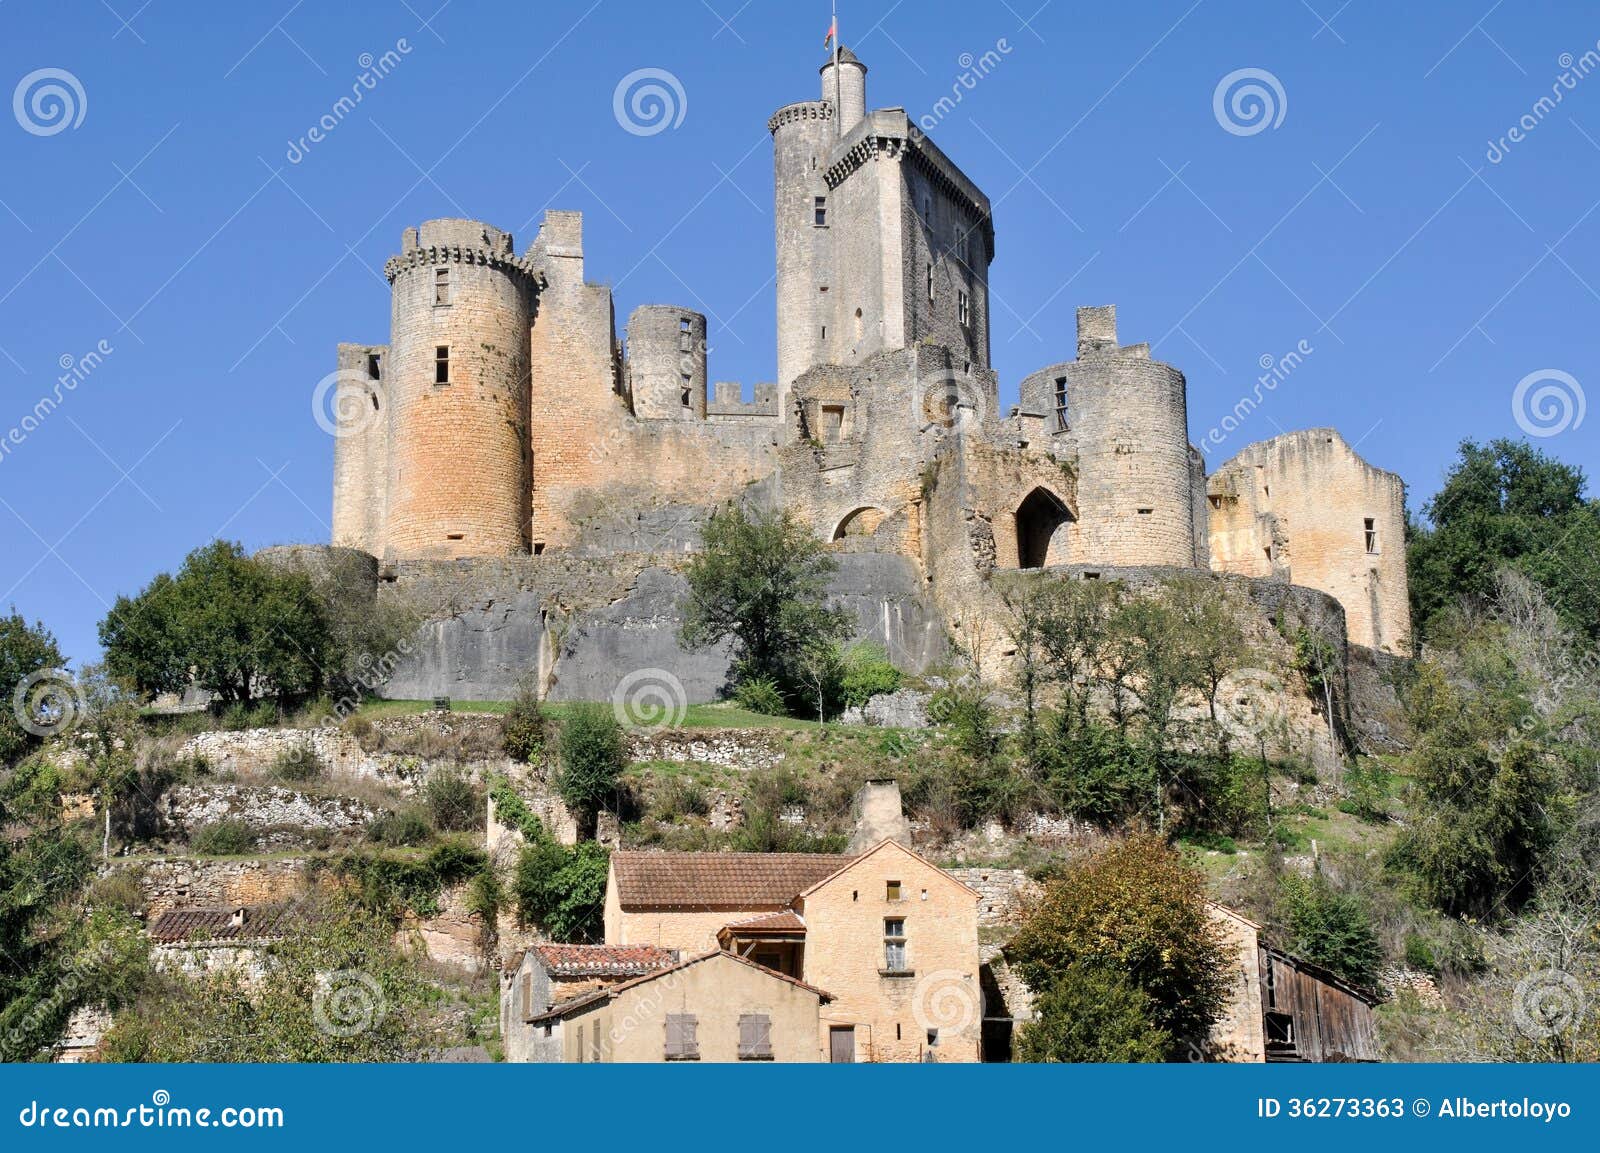 castle of bonaguil, aquitaine, france